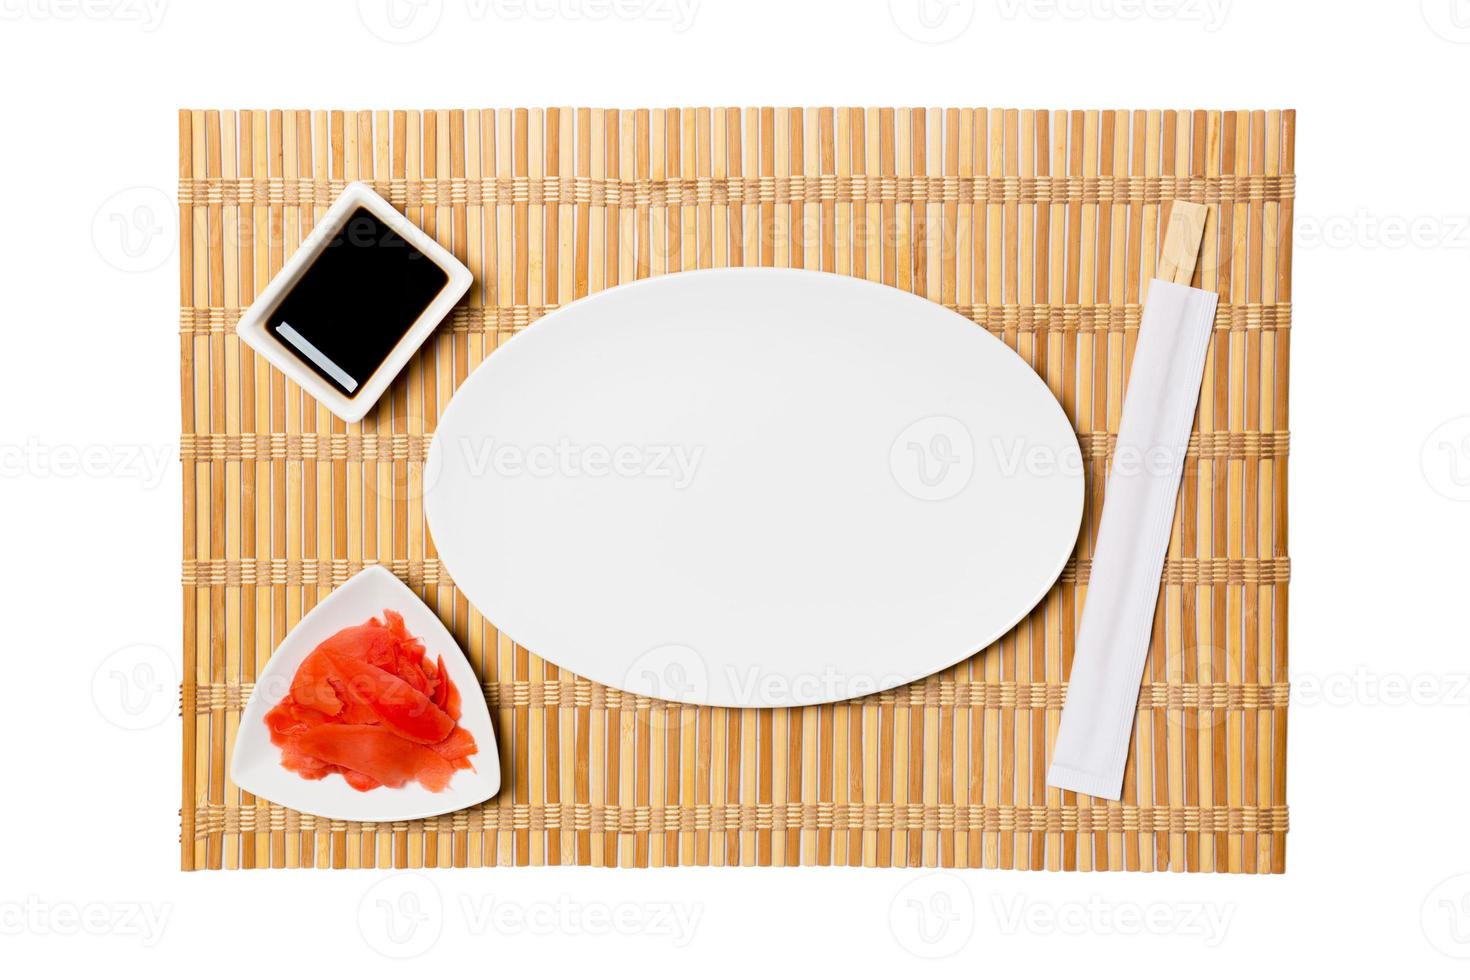 tömma oval vit tallrik med ätpinnar för sushi och soja sås, ingefära på gul bambu matta bakgrund. topp se med kopia Plats för du design foto